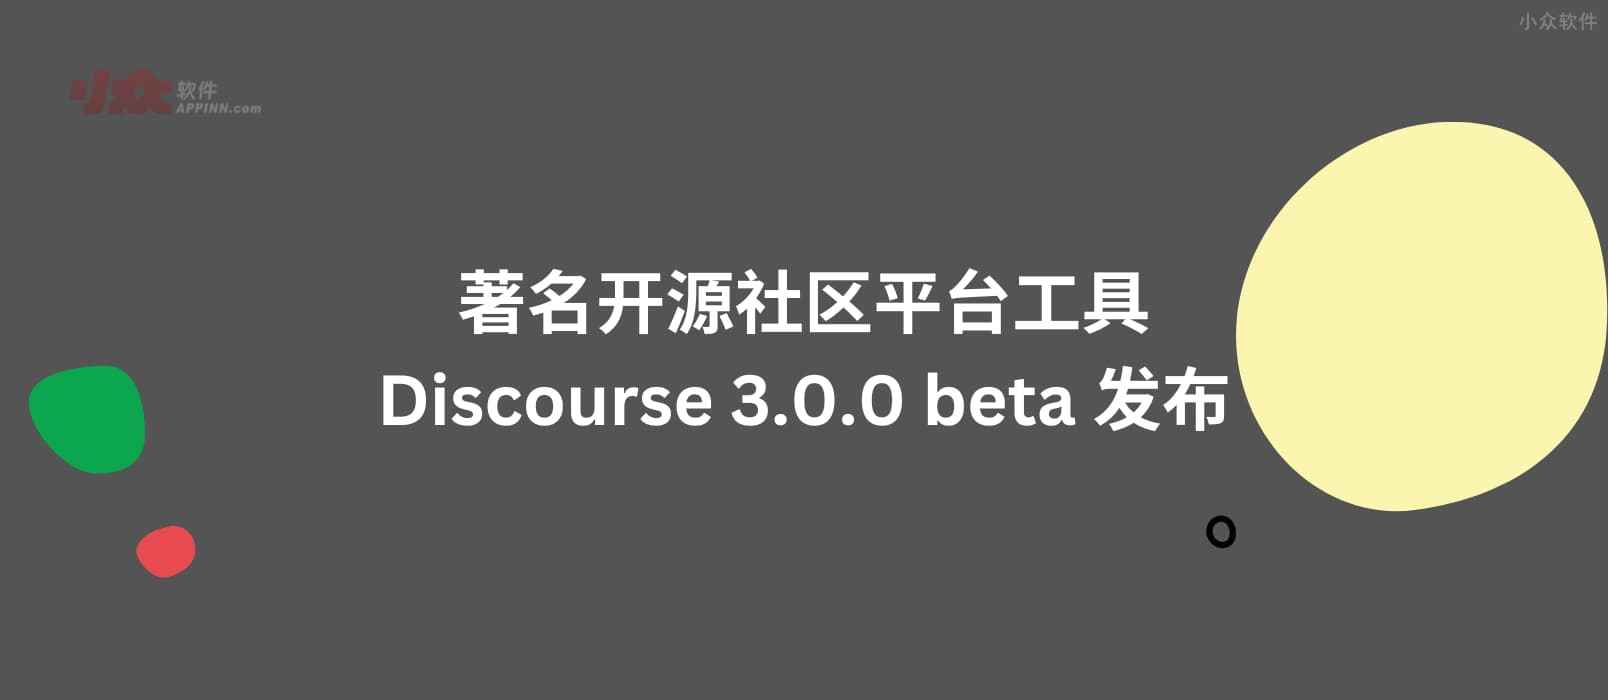 著名开源社区平台工具 Discourse 3.0.0 beta 发布